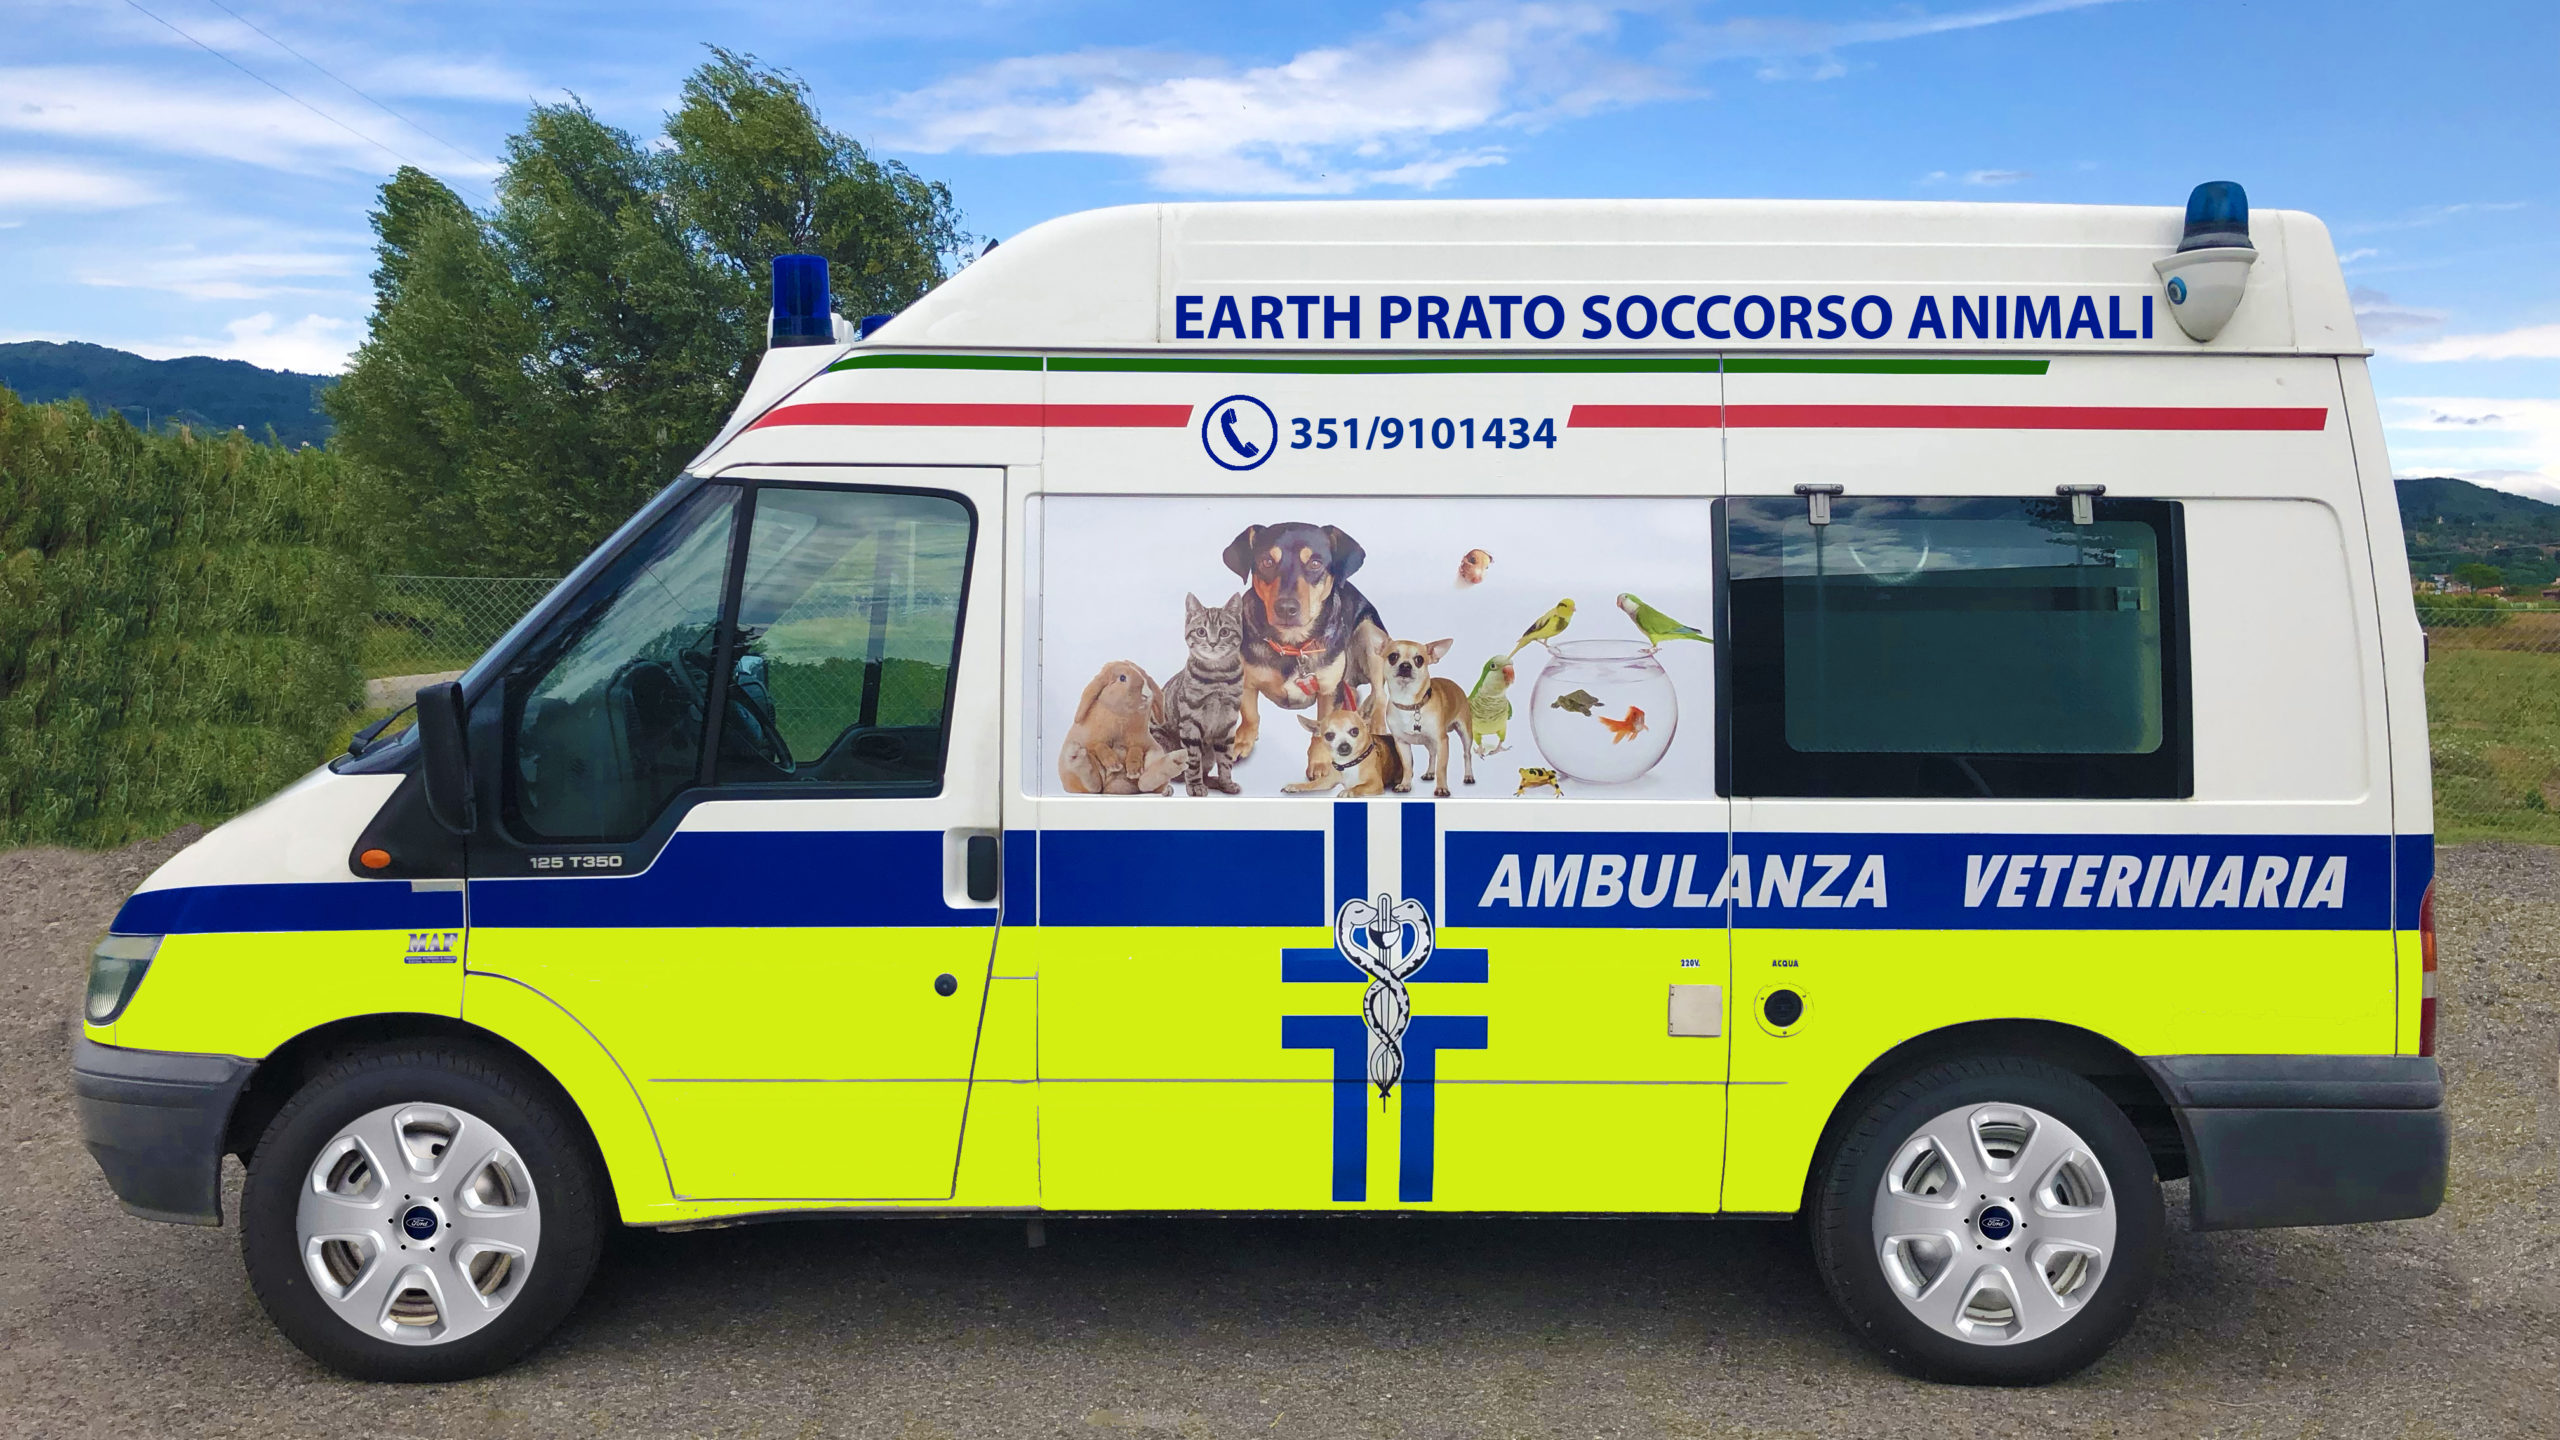 A Prato arriva l’ambulanza (vera) per animali: 24 ore su 24 a disposizione di tutti